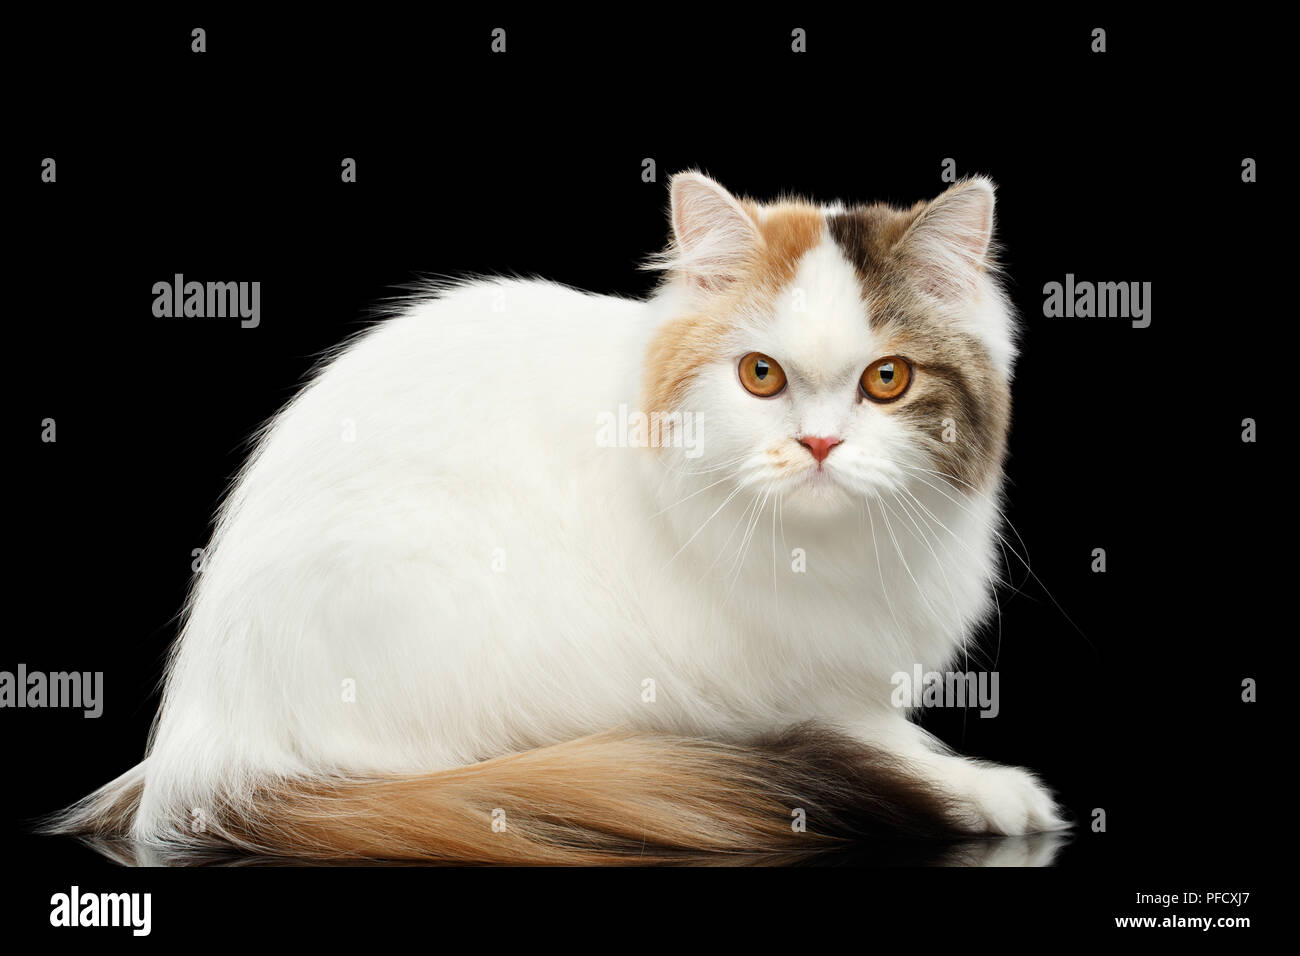 Retrato de Mad Scottish Highland recto Cat, blanco con rojo el color de piel, sentarse y miradas curiosas, aislado fondo negro, vista lateral, Grumpy F Foto de stock